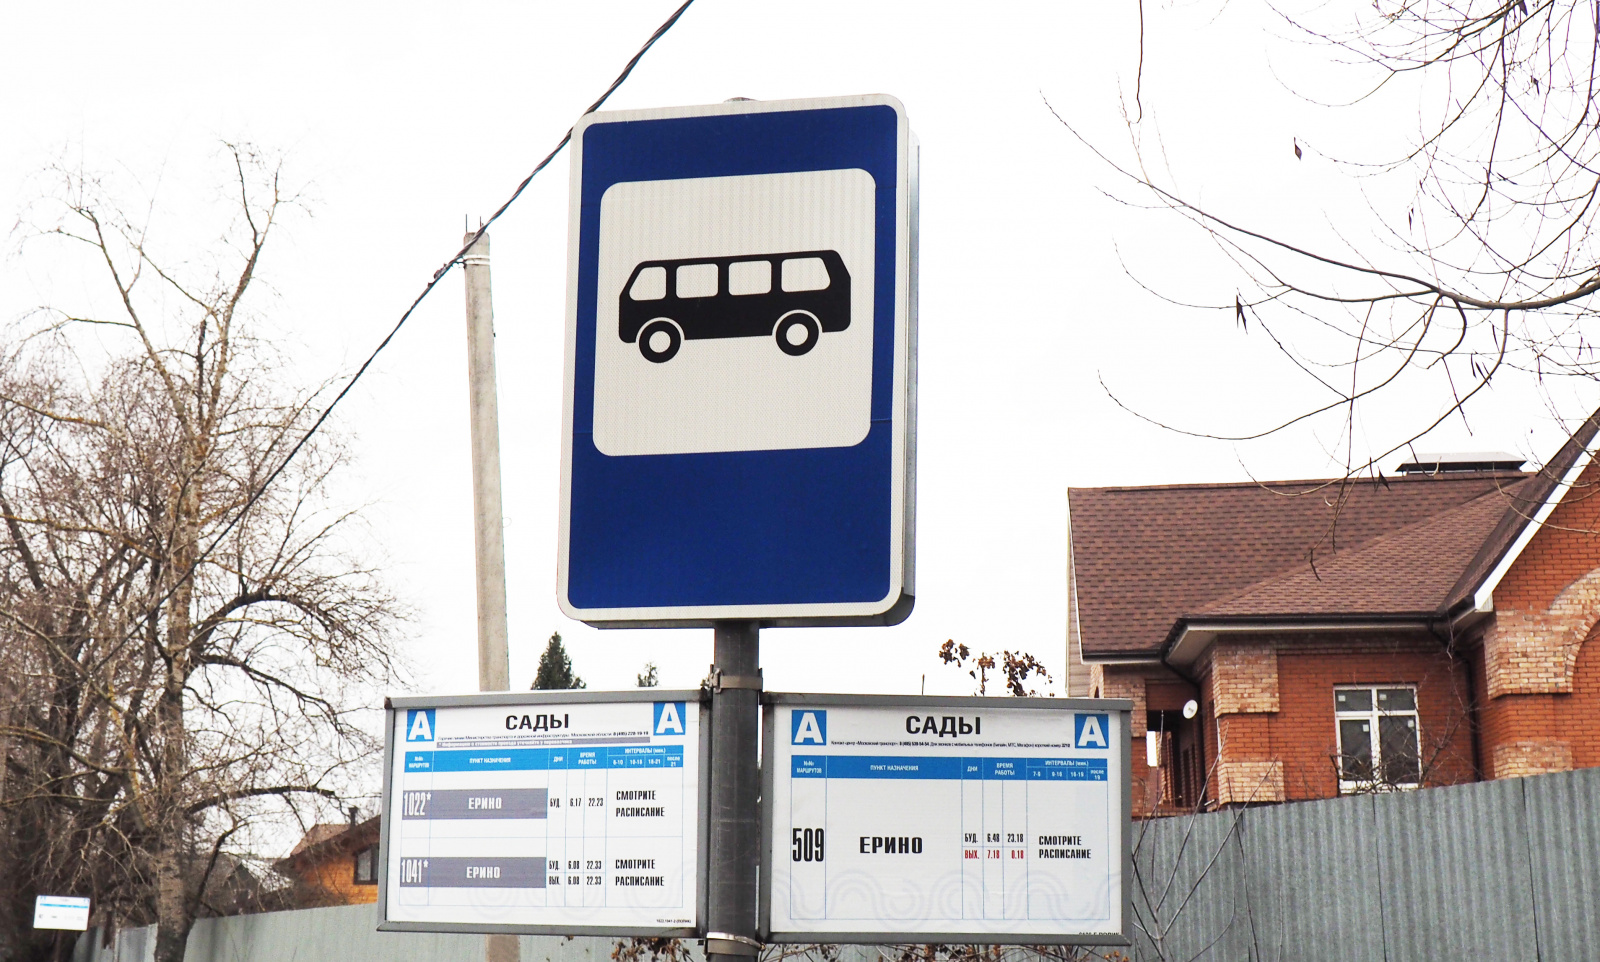 Расписание автобусов появилось на остановке в поселке Ерино